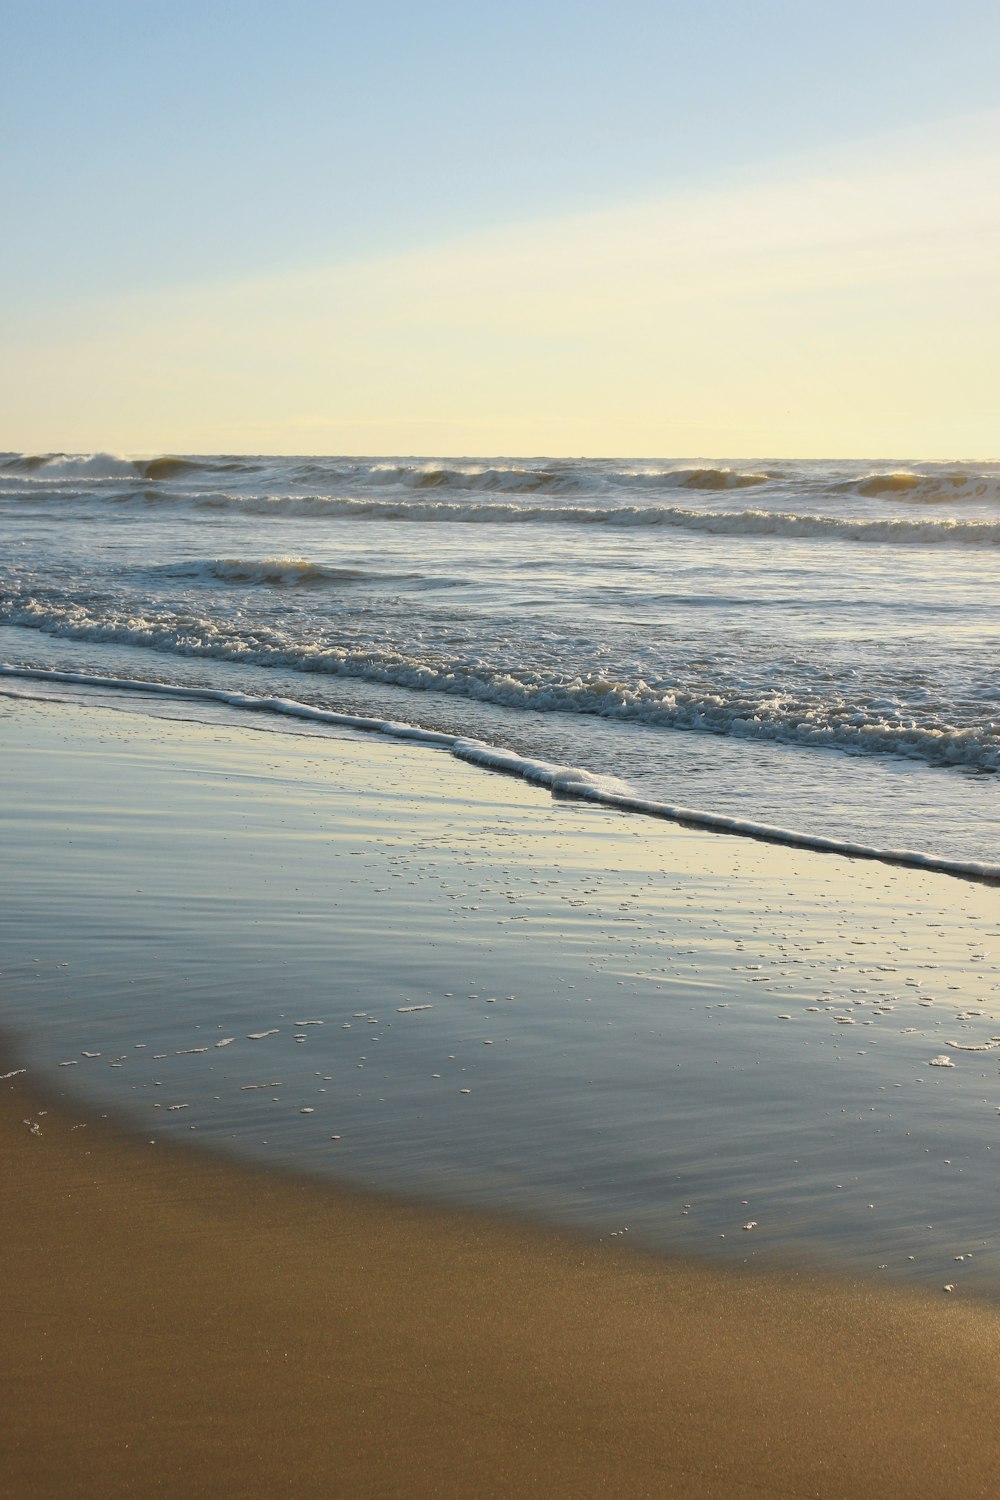 una persona che cammina sulla spiaggia con una tavola da surf